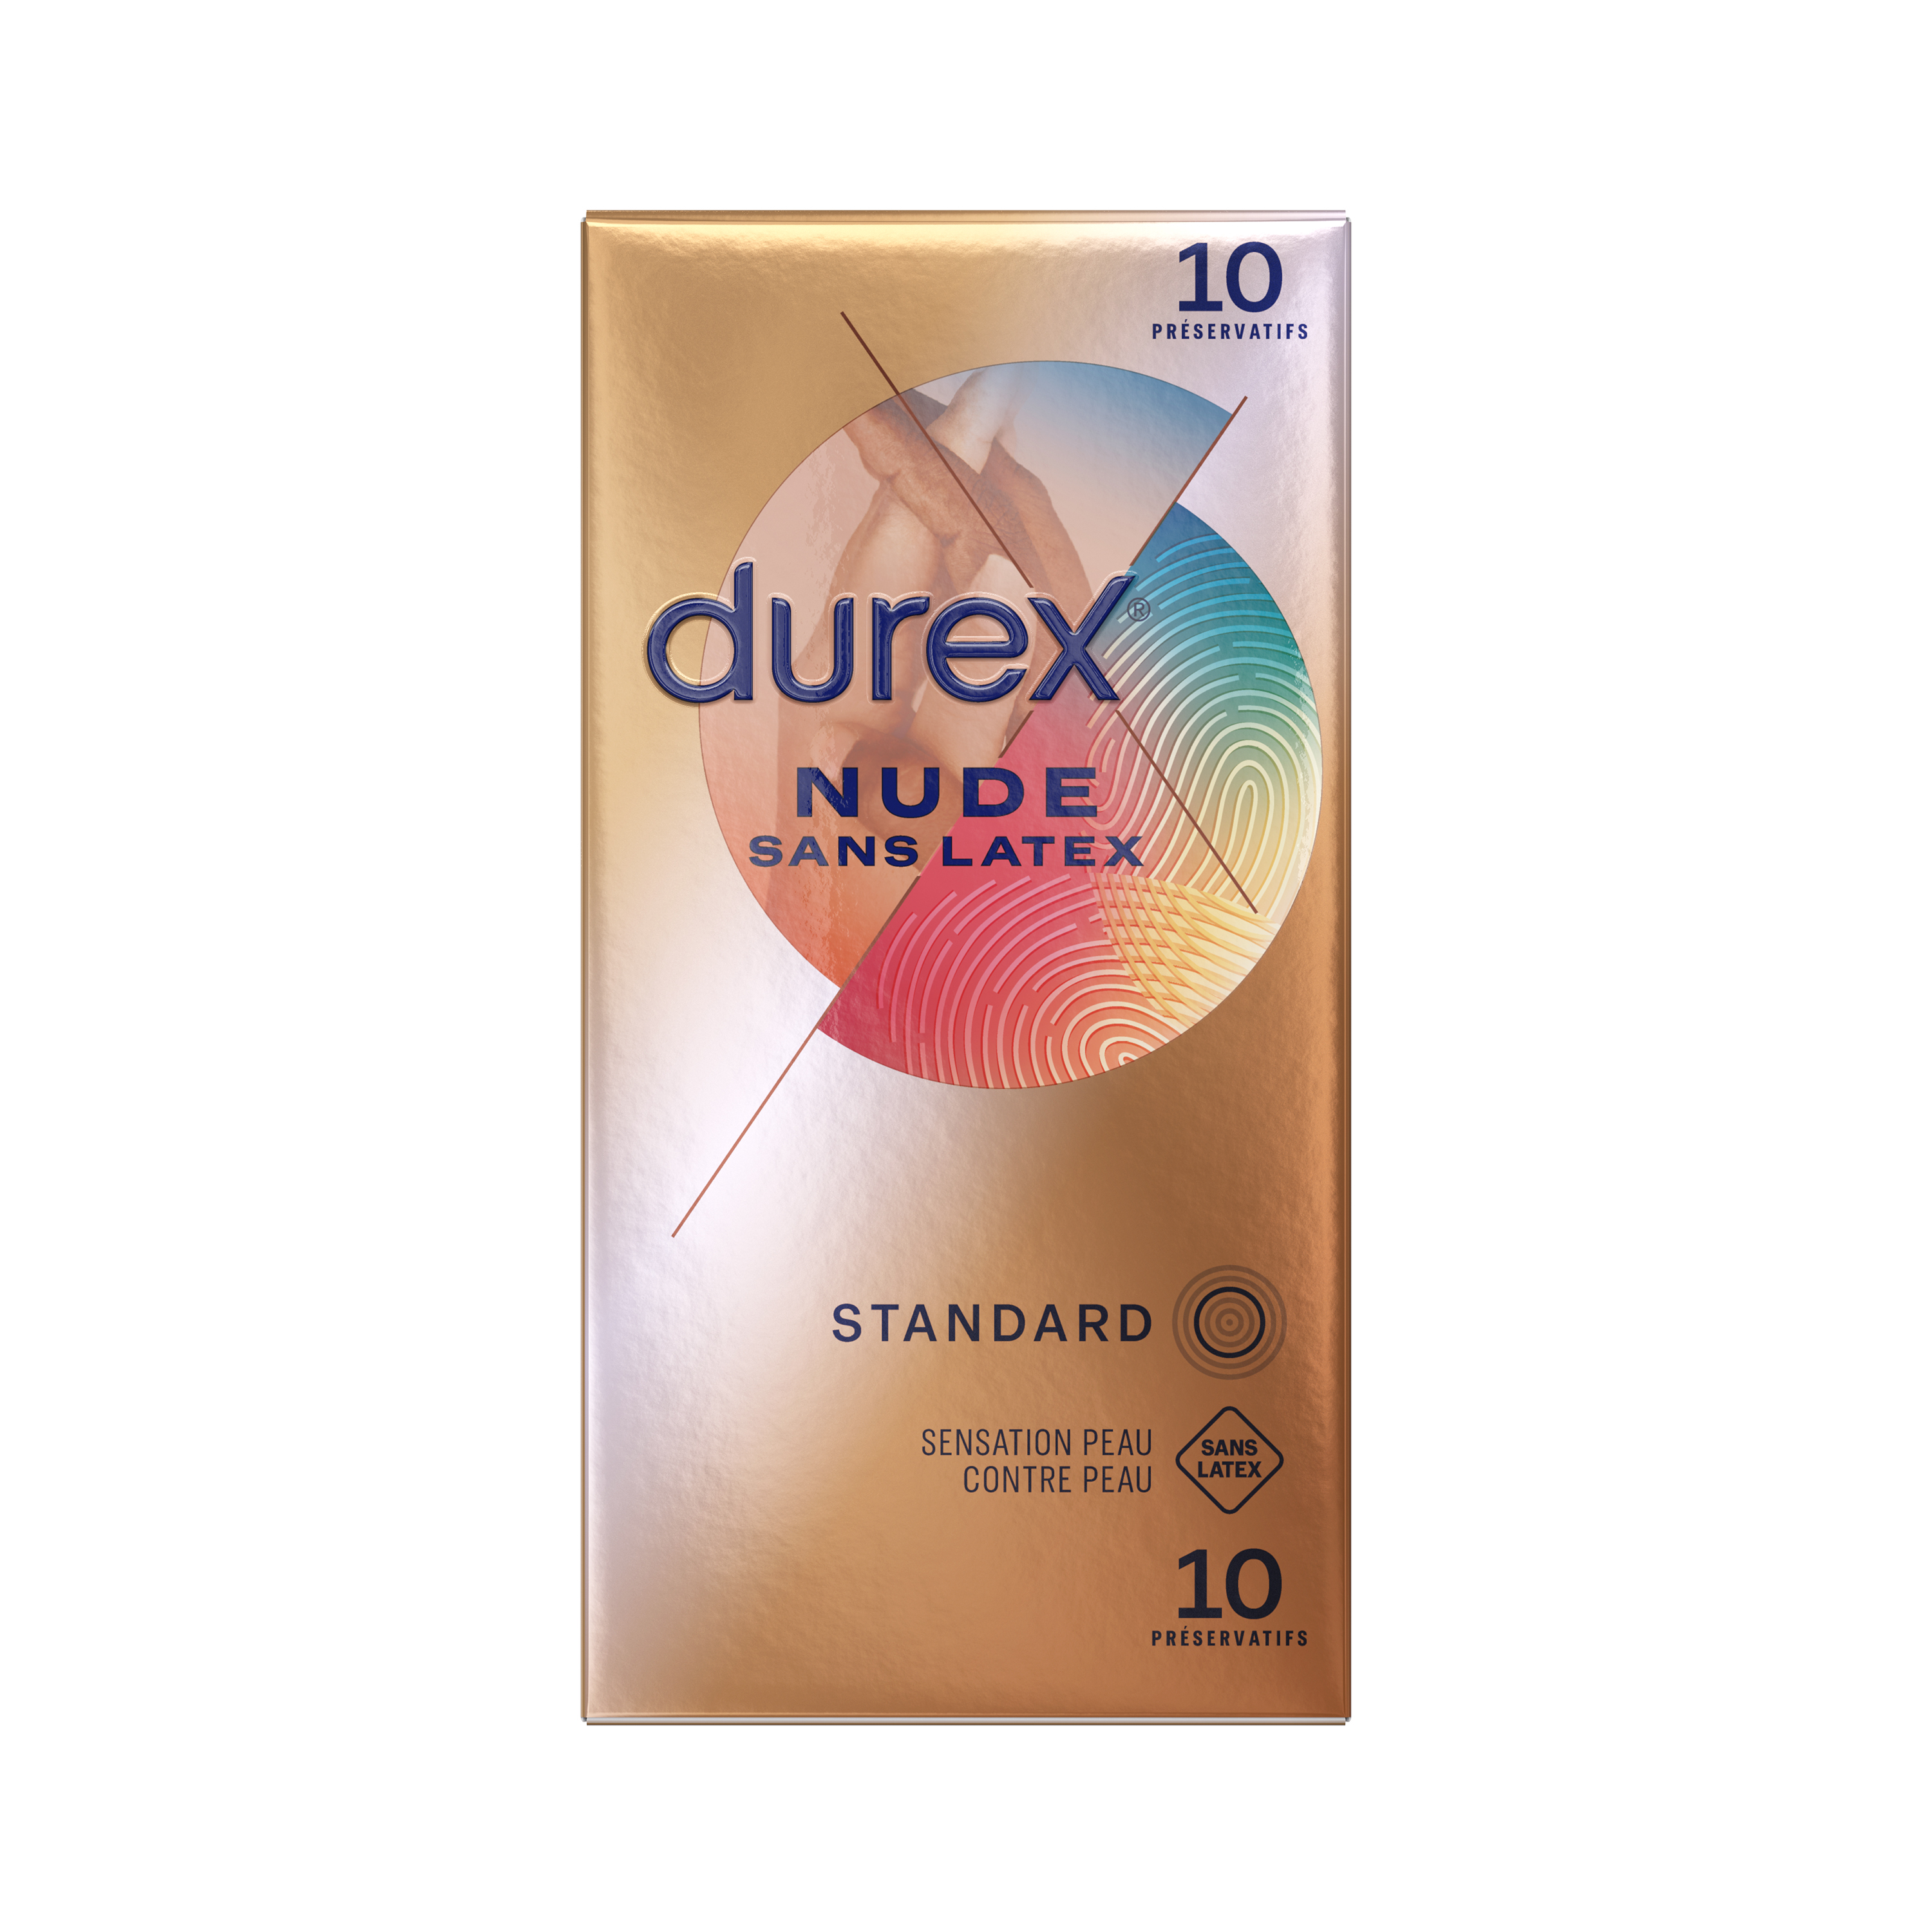 DUREX Nude Préservatif sans latex 10 préservatifs pas cher 